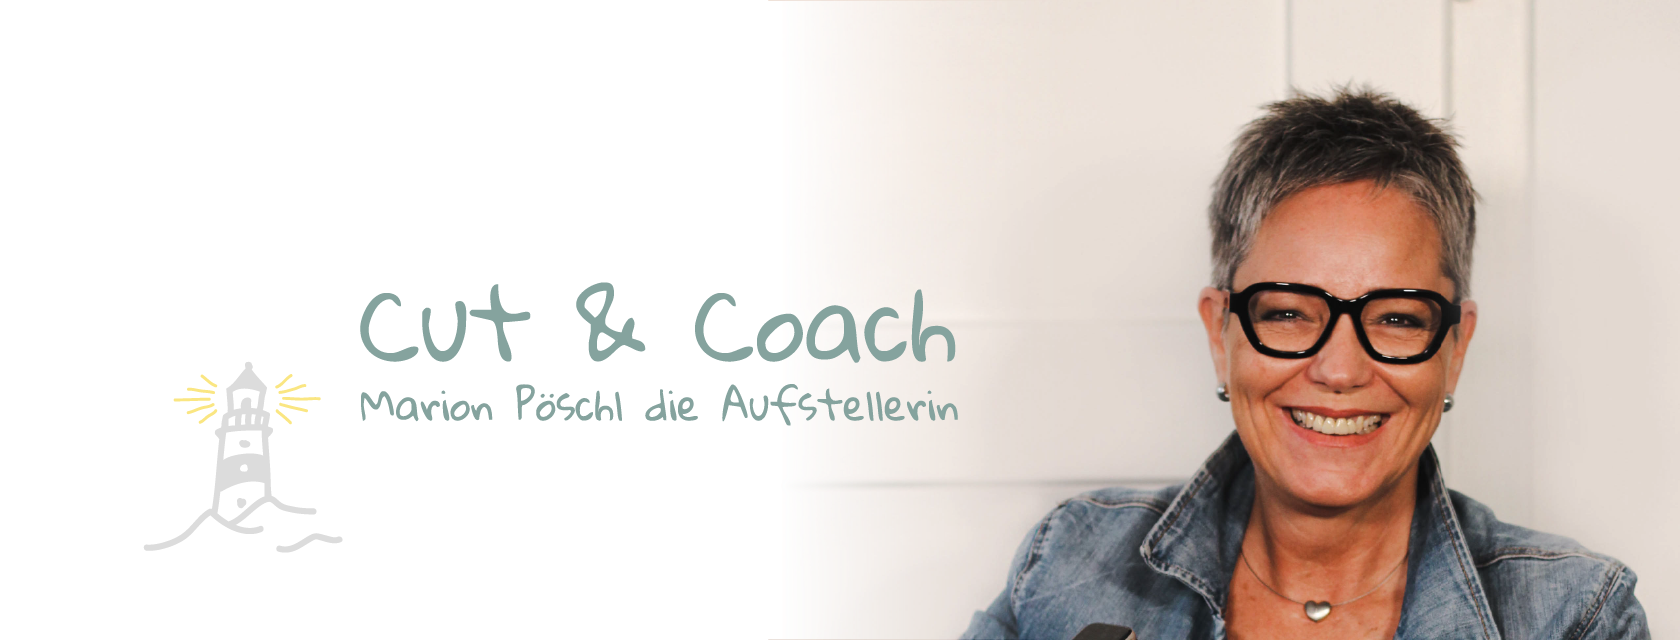 Cut & Coach - Marion Pöschl